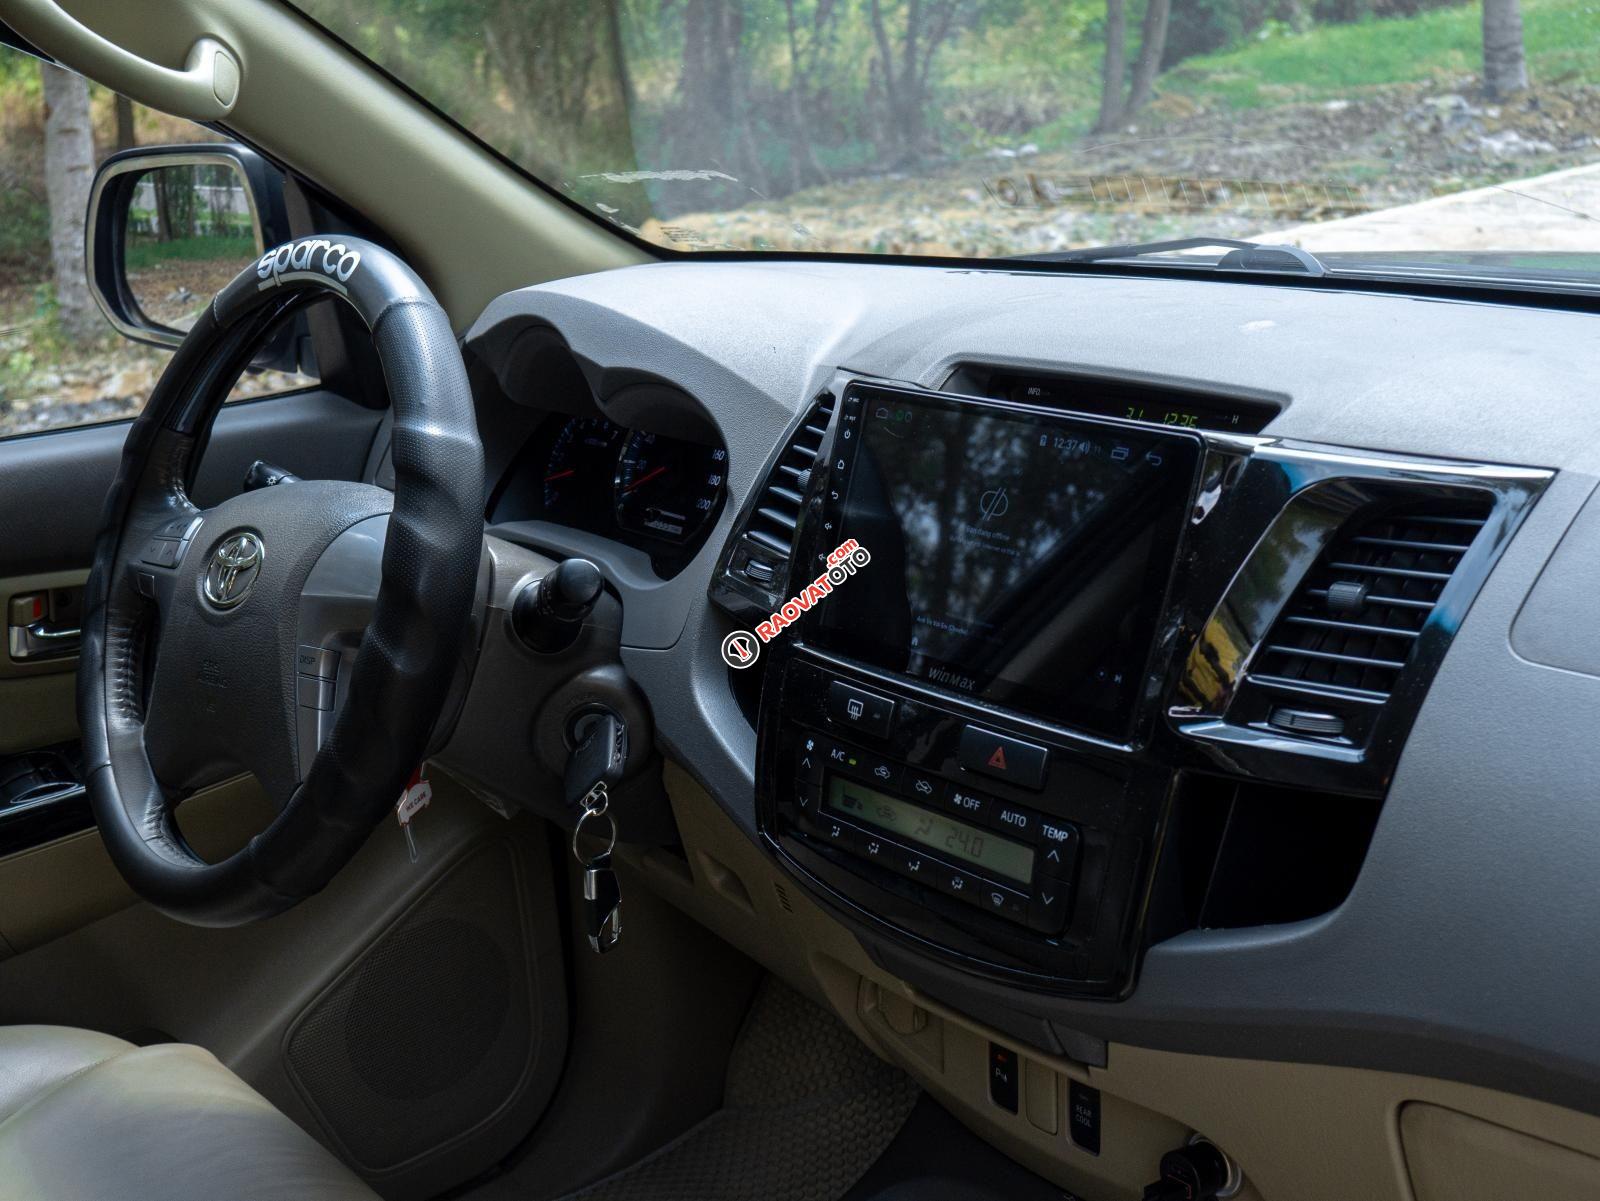 Cần bán Toyota Fortuner 2.7V sản xuất 2013, đăng ký 2014. Xe ngon giá tốt chính chủ biển HCM-6